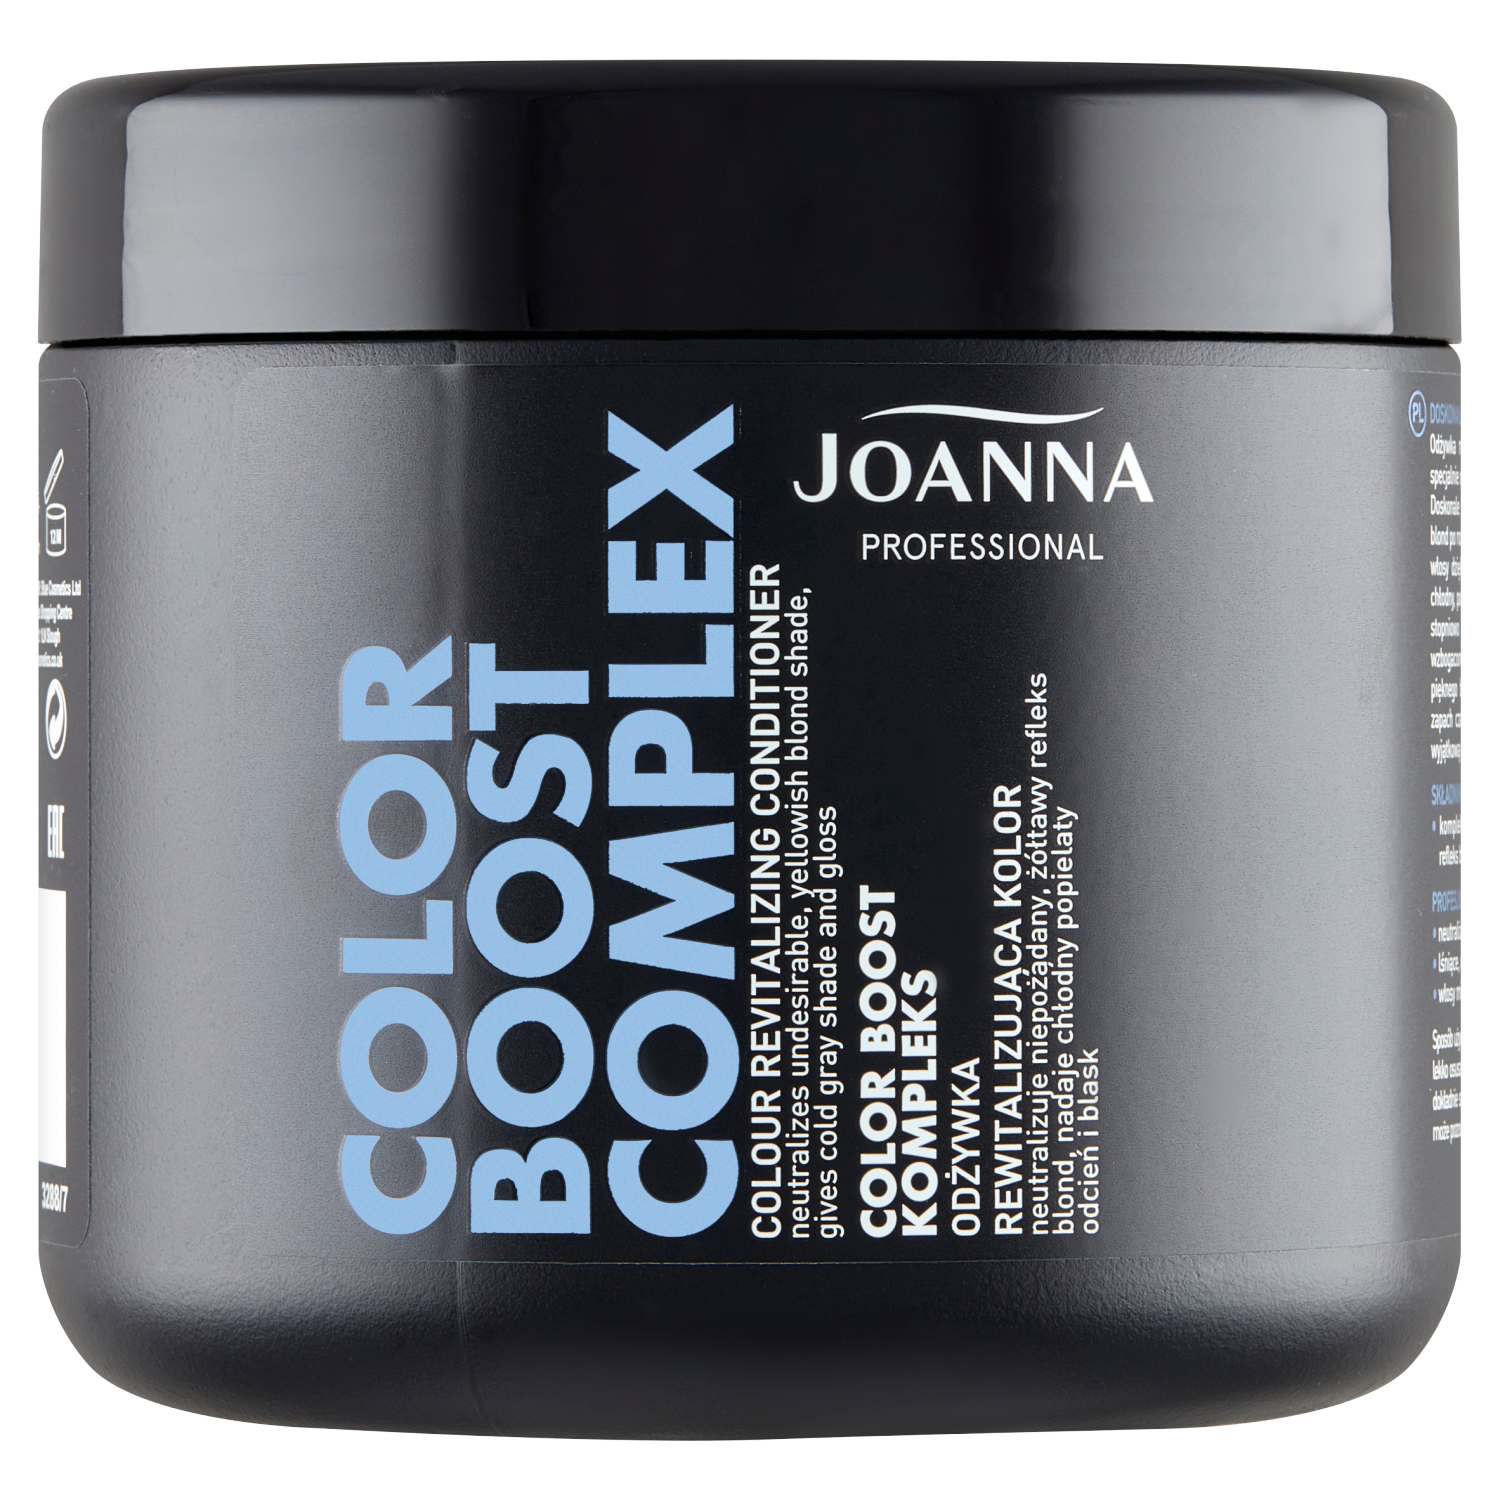 Joanna Professional Color Boost Complex кондиционер для волос, восстанавливающий цвет, 500 г joanna кондиционер нейтрализатор желтизны для волос joanna color boost complex с протеинами пшеницы холодный пепельный 500 г